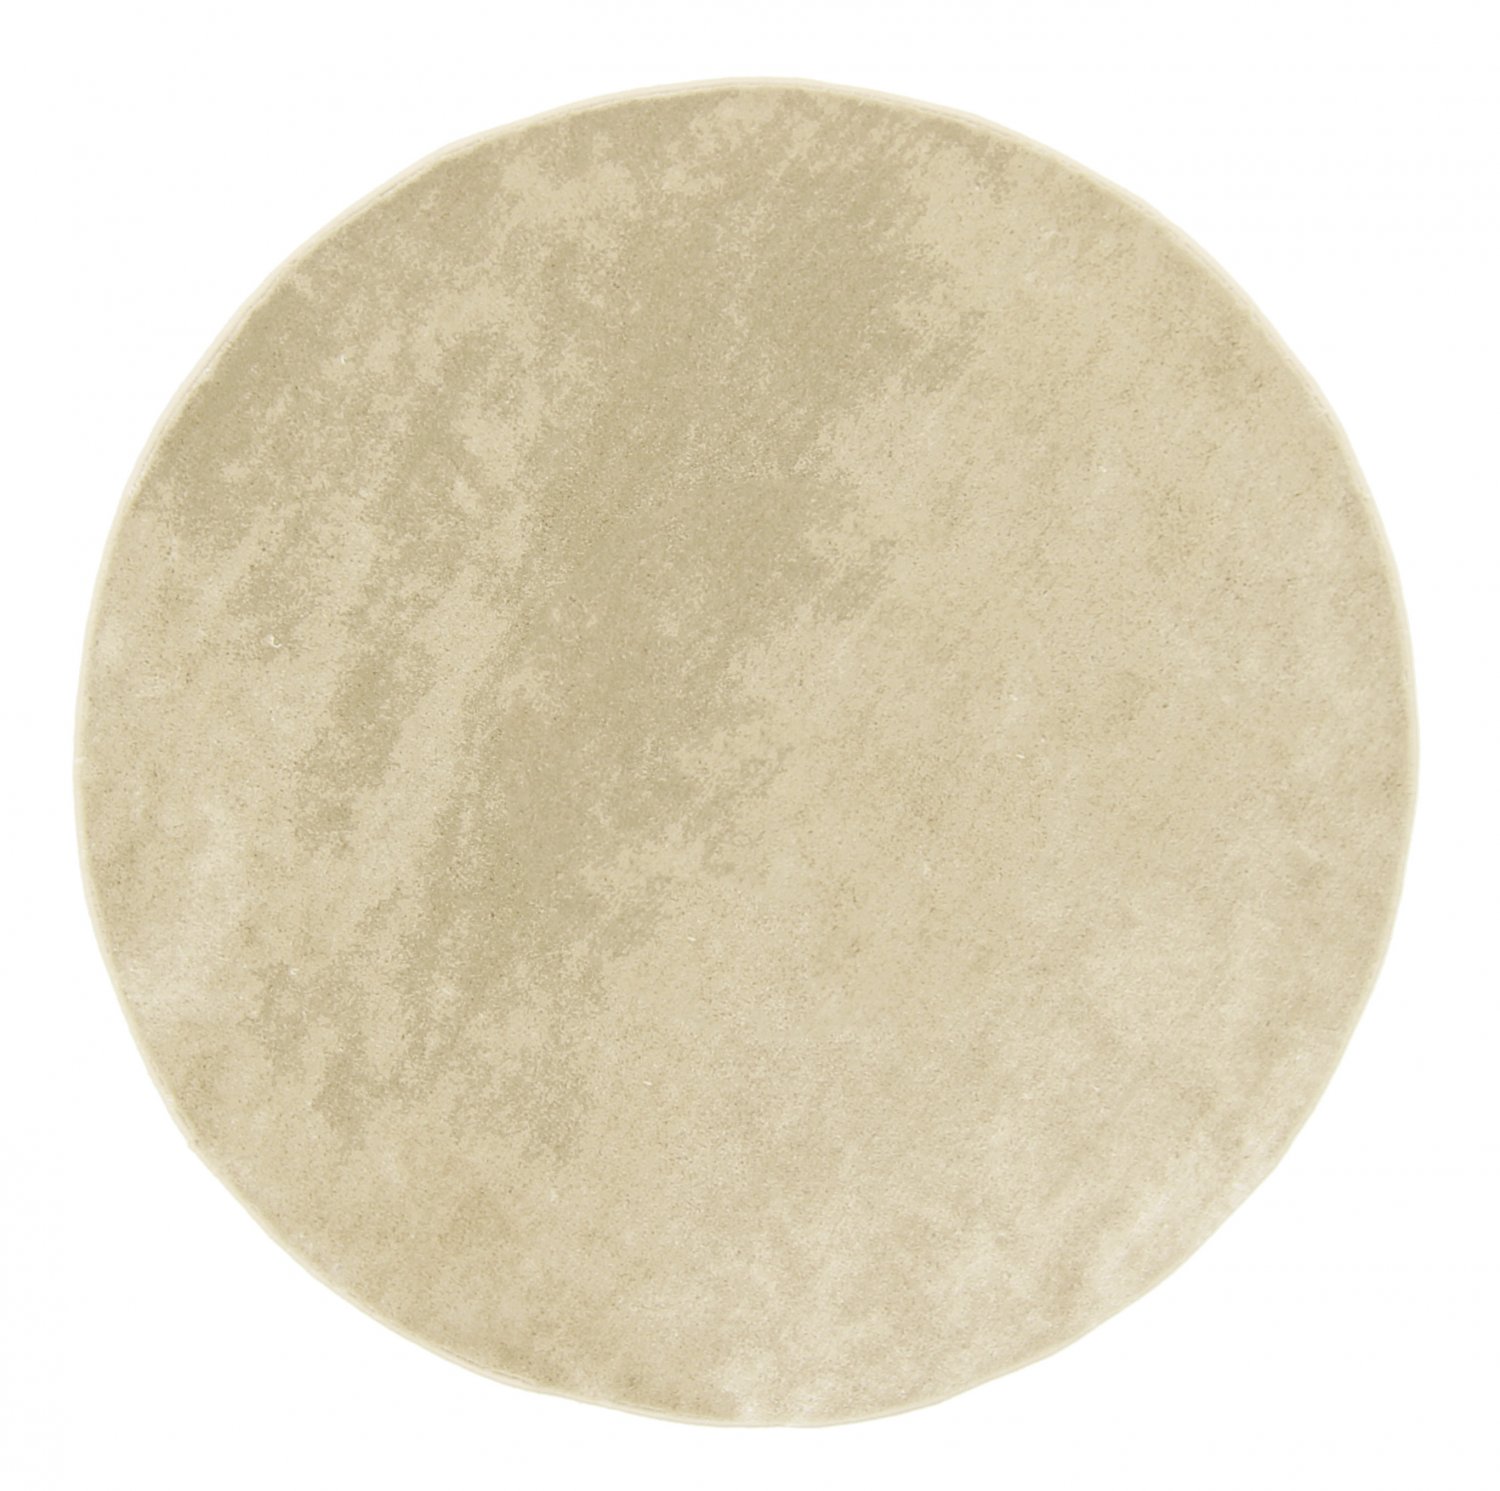 Pyöreä matot - Lucknow (beige)